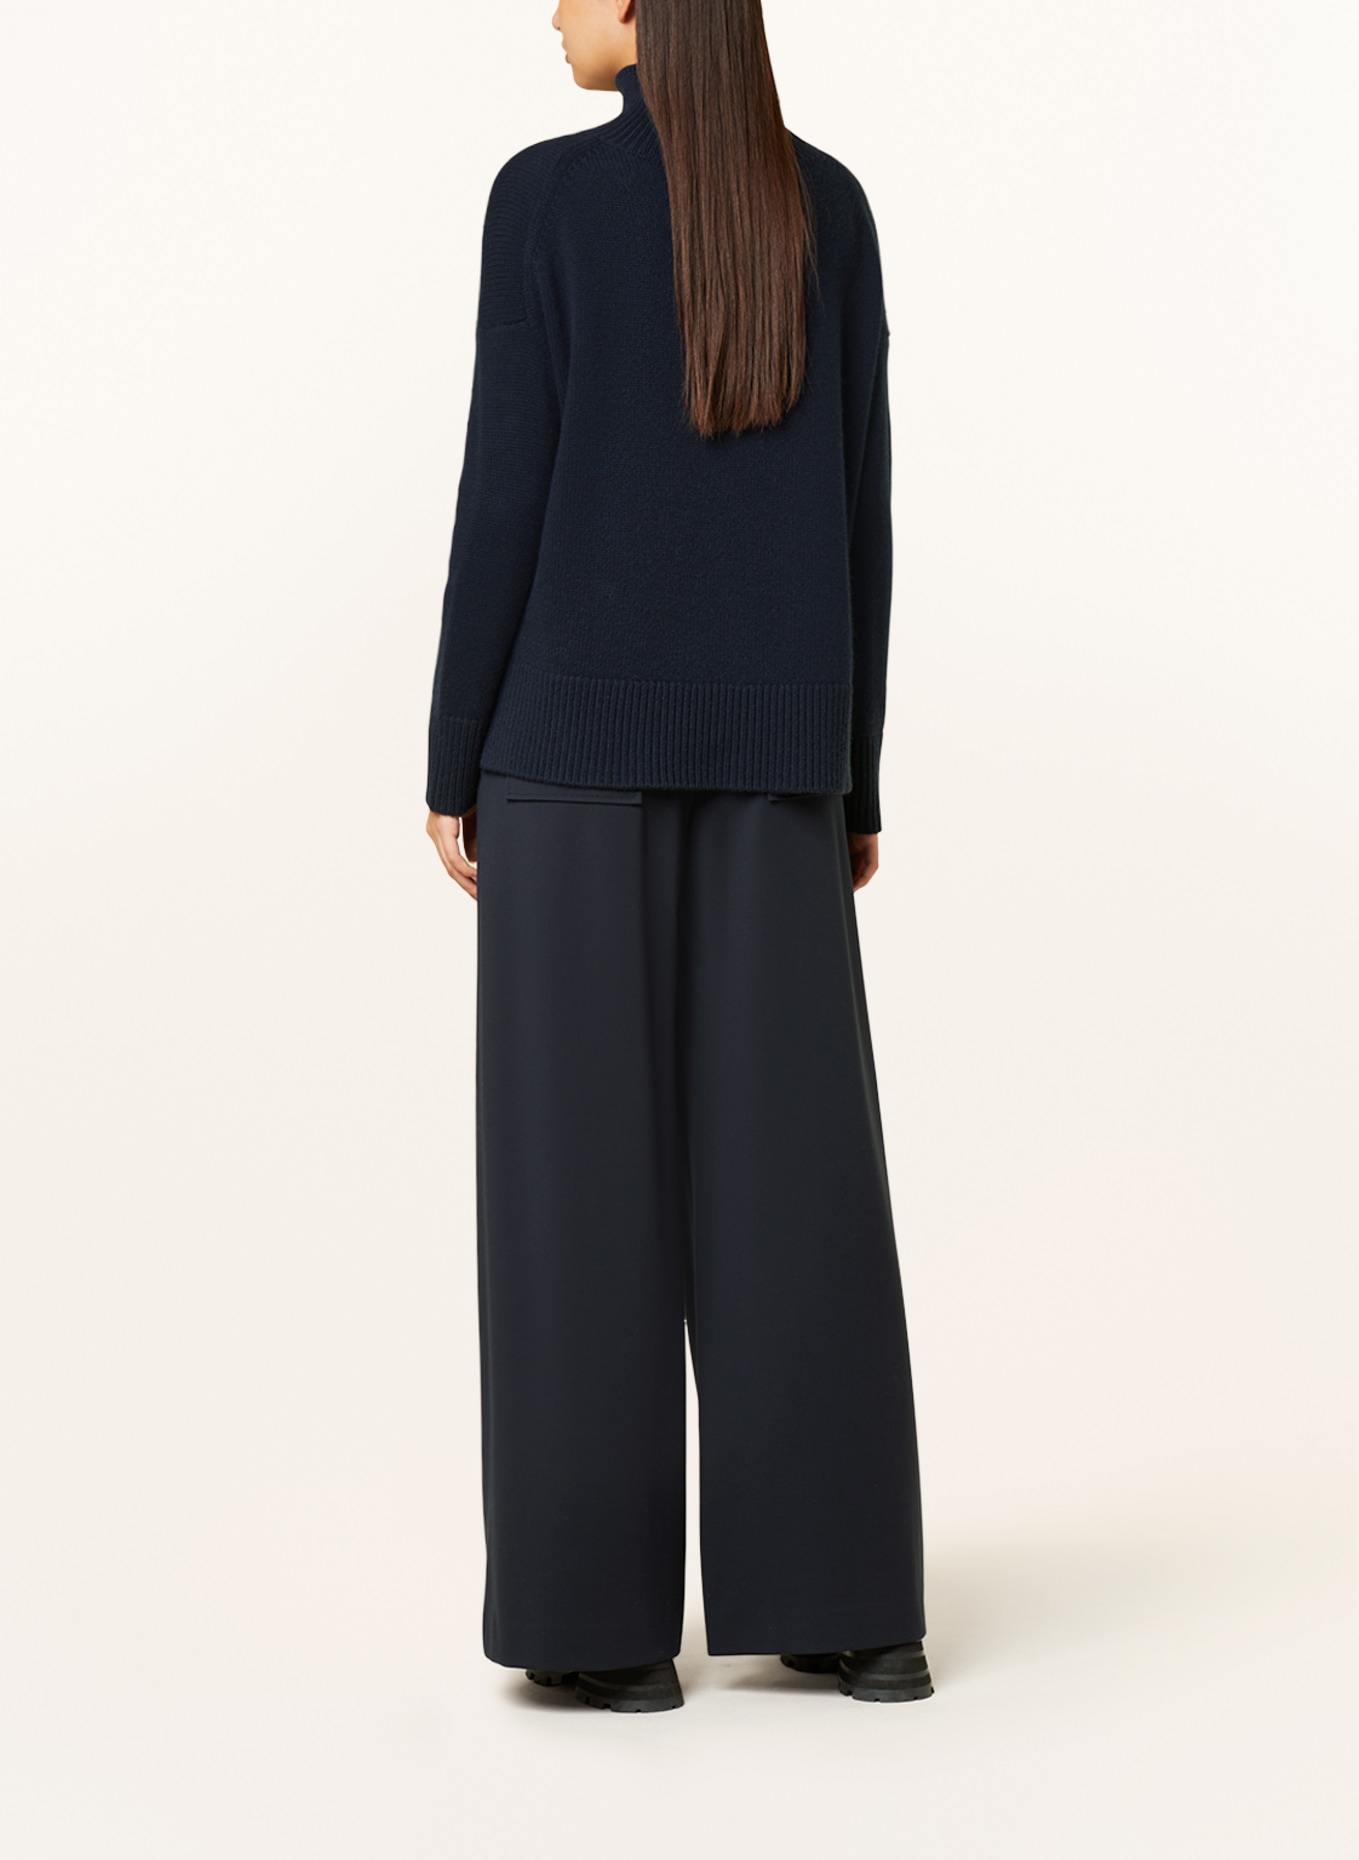 KUJTEN Cashmere-Pullover ULLA, Farbe: DUNKELBLAU (Bild 3)